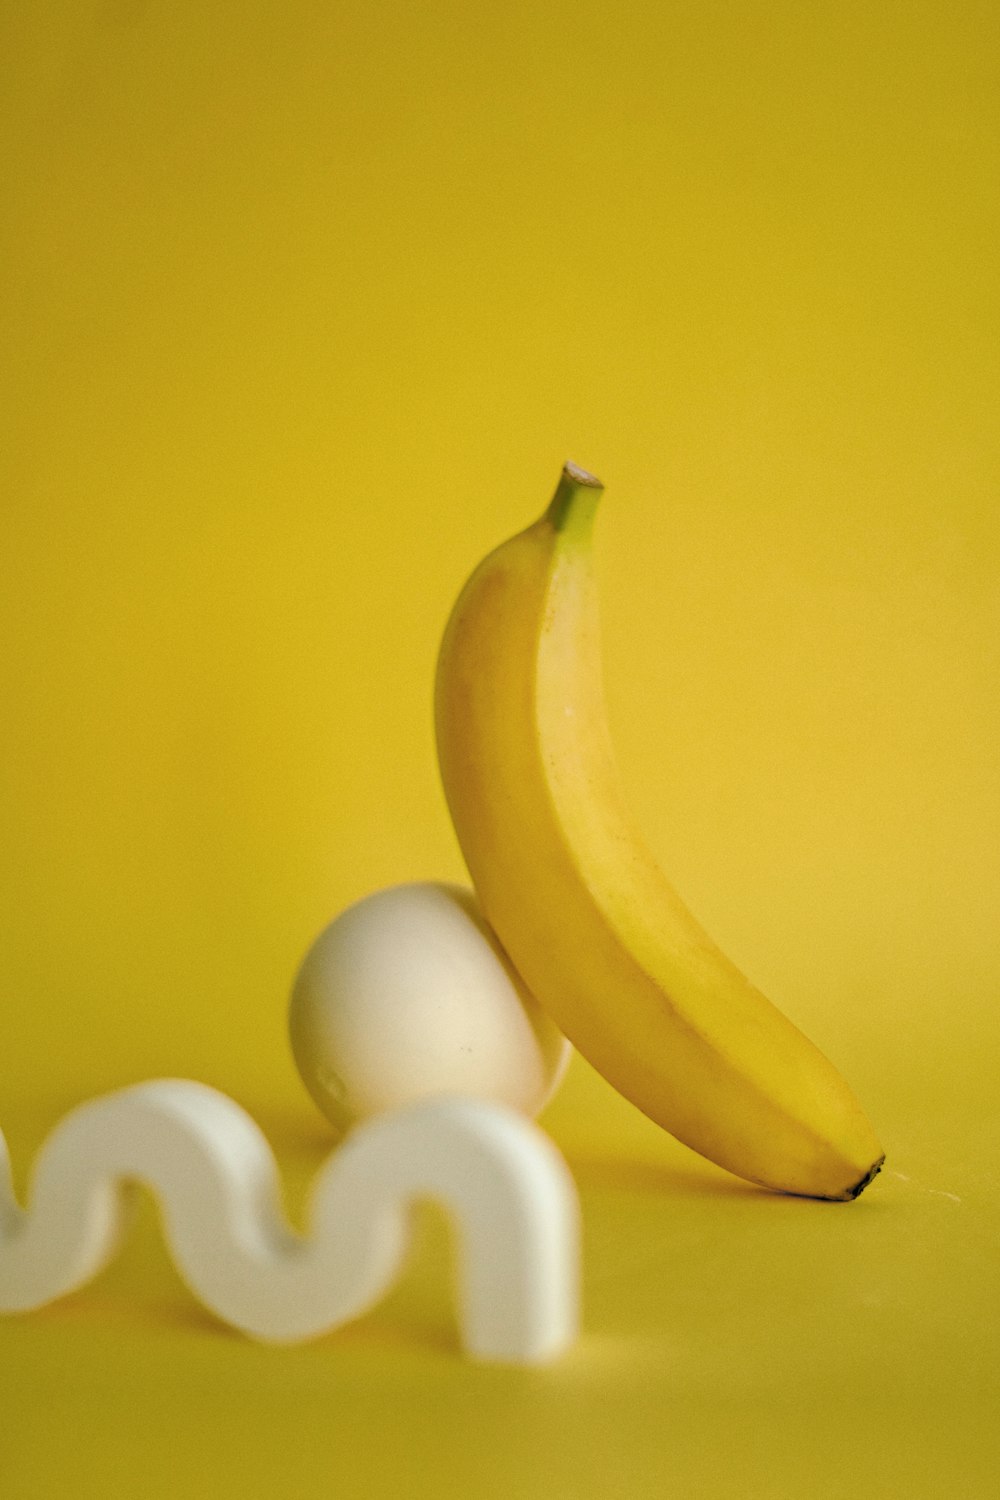 Eine Banane sitzt neben einem Ei auf gelbem Hintergrund